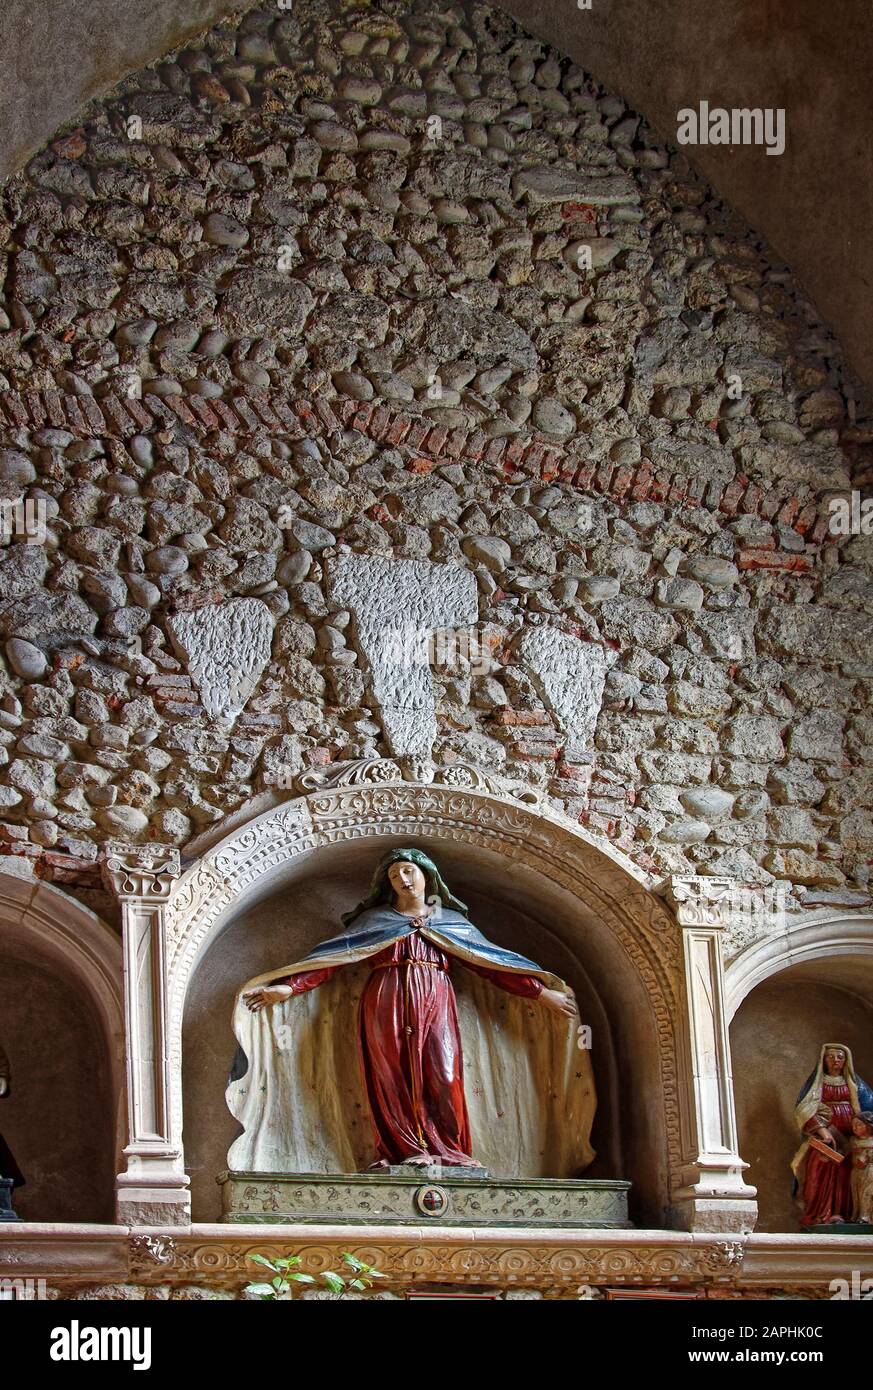 Église catholique Sainte Marie Madeleine, 15 siècle, mur de pierre, statues, niches archies, ancien bâtiment religieux, Perouges, France, vertical Banque D'Images